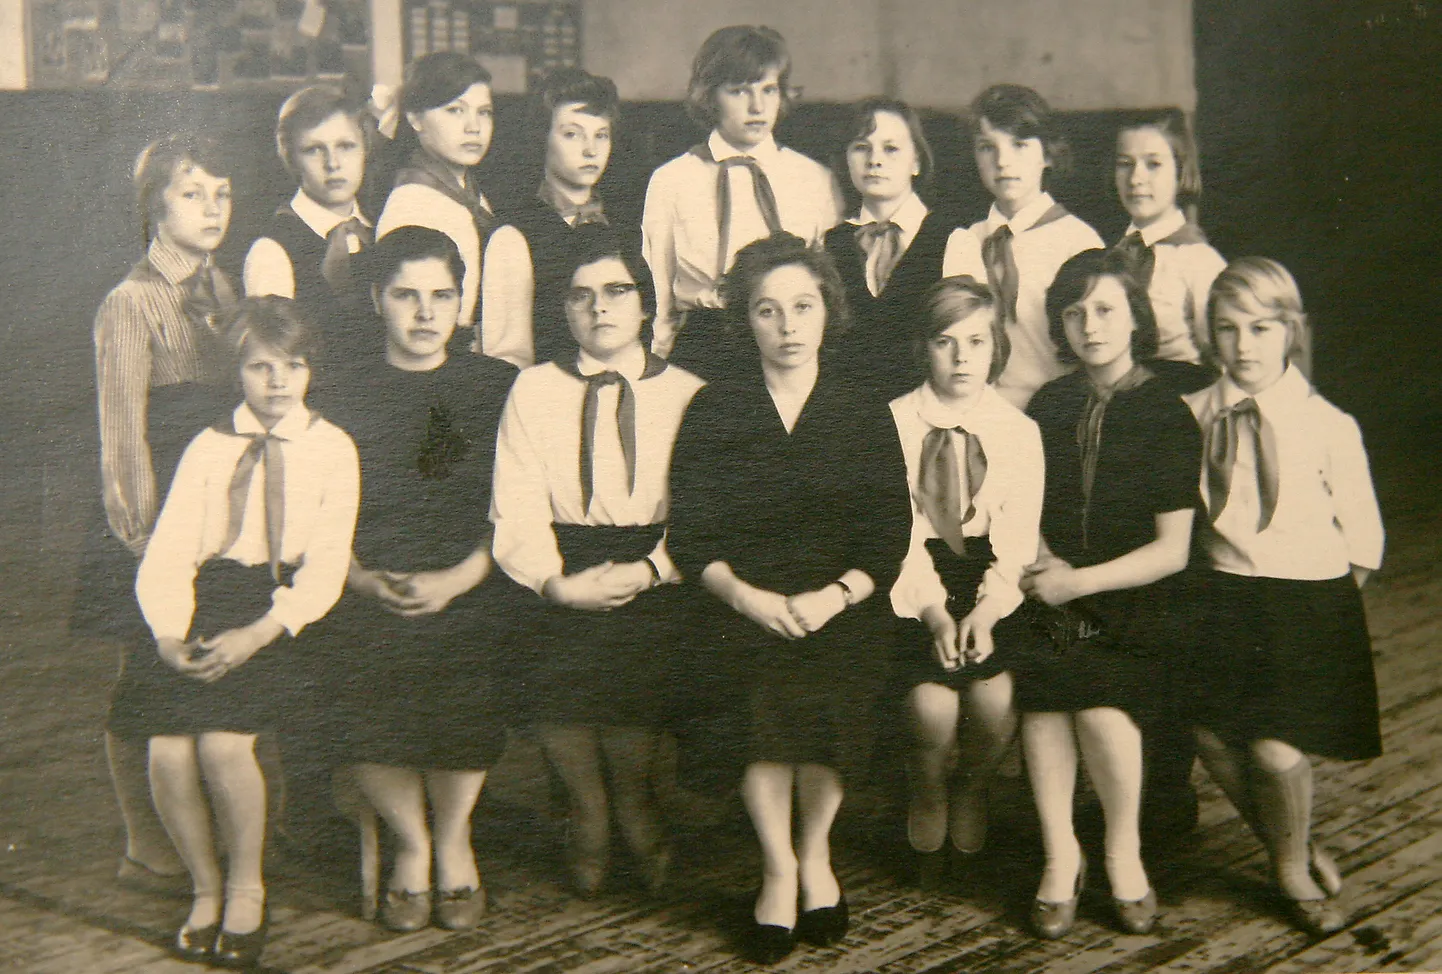 Fotol keskel istuv Urve Kilk oli ise peaaegu laps, kui Merike Perit ja Sirje Pallot õpetas. Nood seisavad vastavalt vasakult kolmanda ja neljandana.